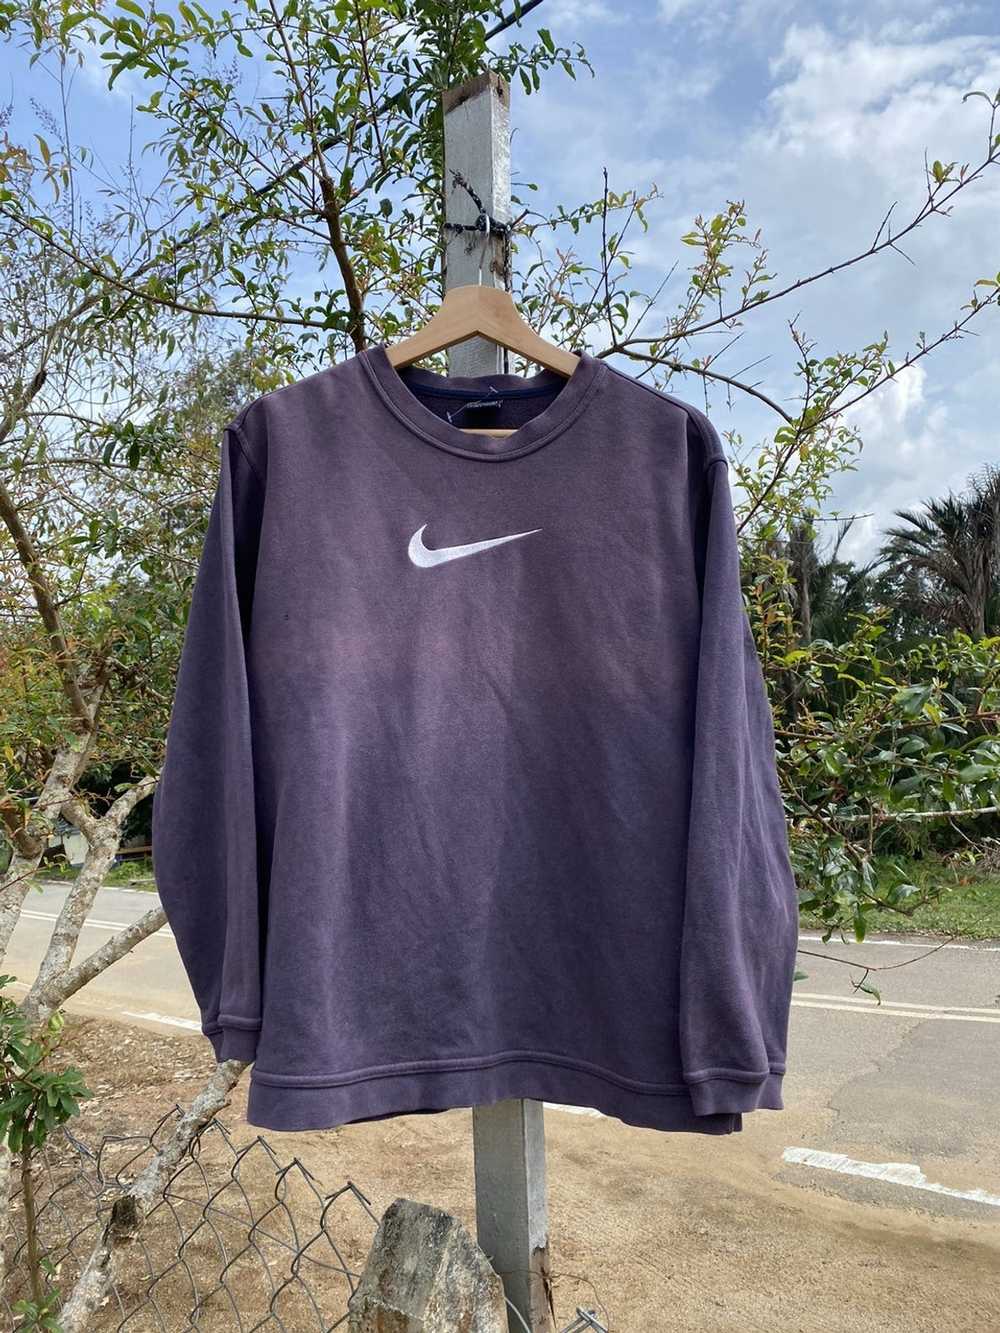 Nike Sweatshirt NIKE very nice faded - image 1